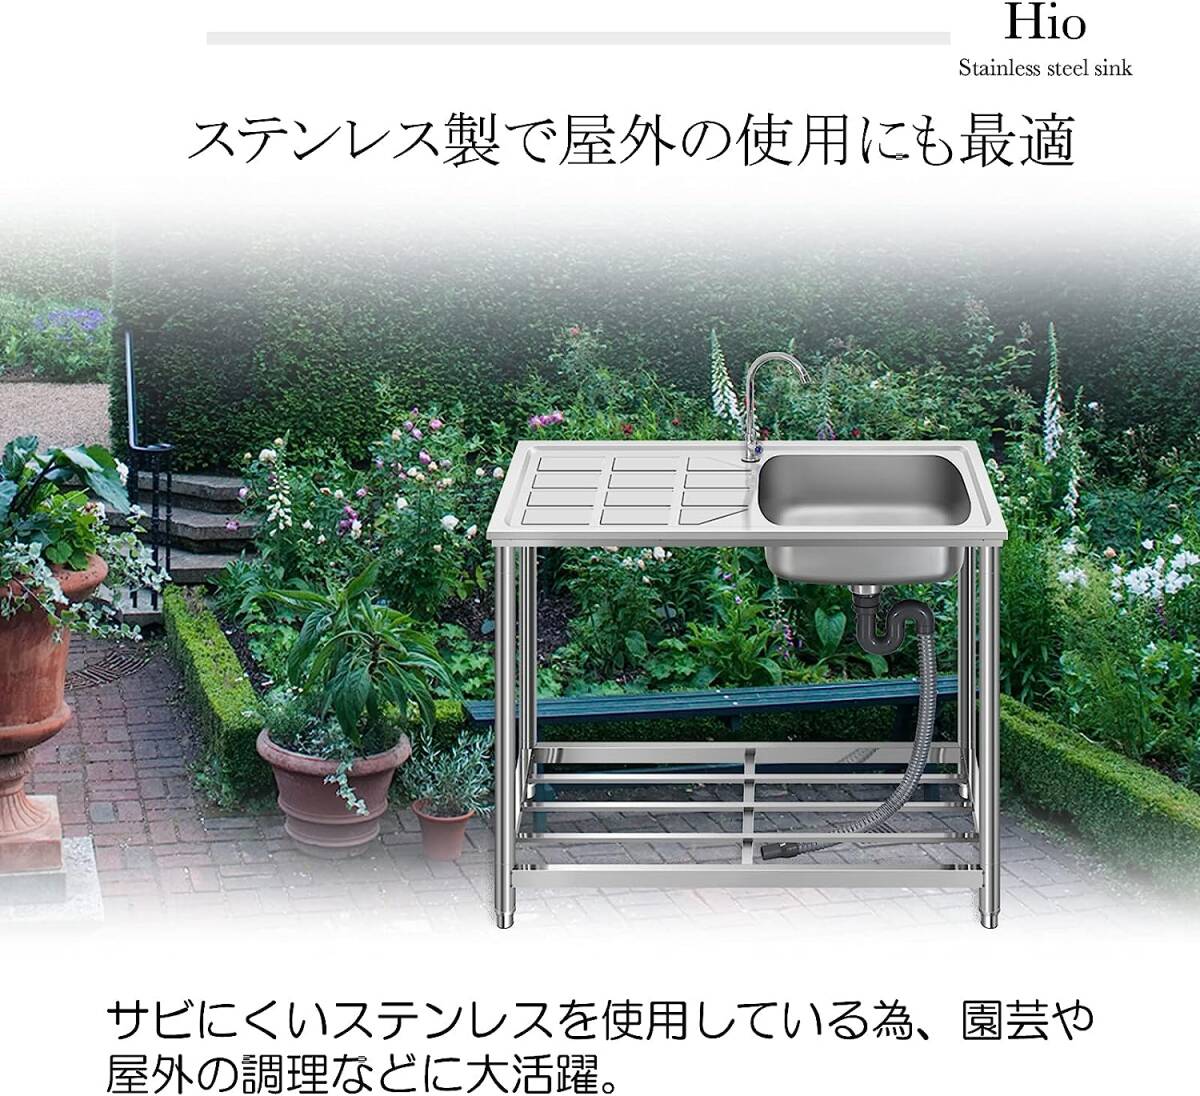 流し台 ステンレス製 蛇口水栓付き 蛇口左右に付けれる 屋外 簡易式 キッチン用 ガーデンシンク コンパクト BBQ アウトの画像1